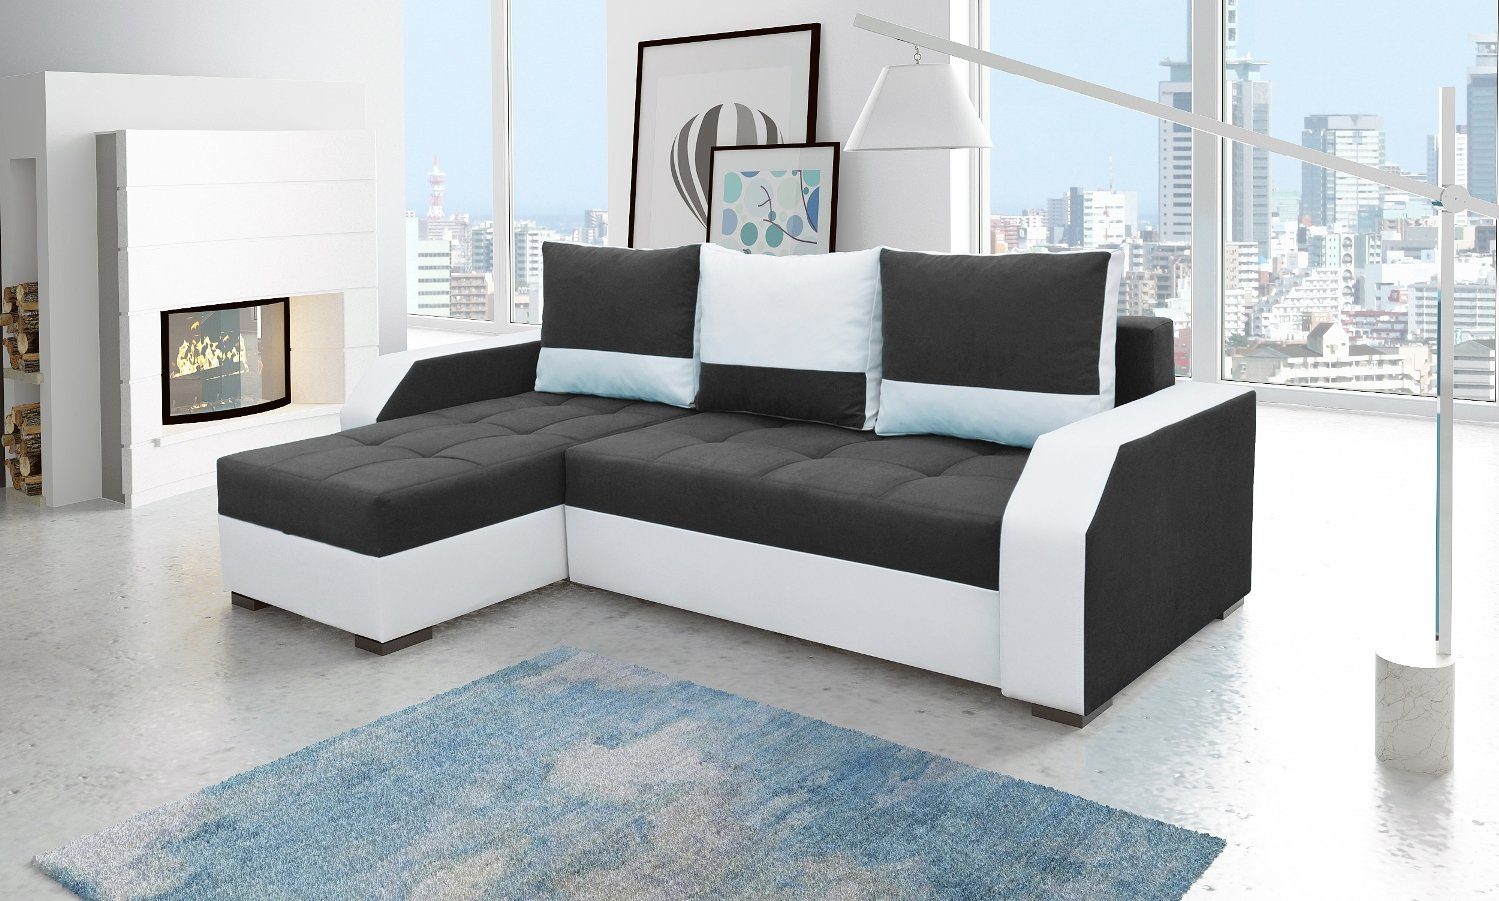 JVmoebel Ecksofa, Design Ecksofa Bettfunktion Couch Leder Textil Polster Sofas Couchen Schwarz / Weiß | Ecksofas